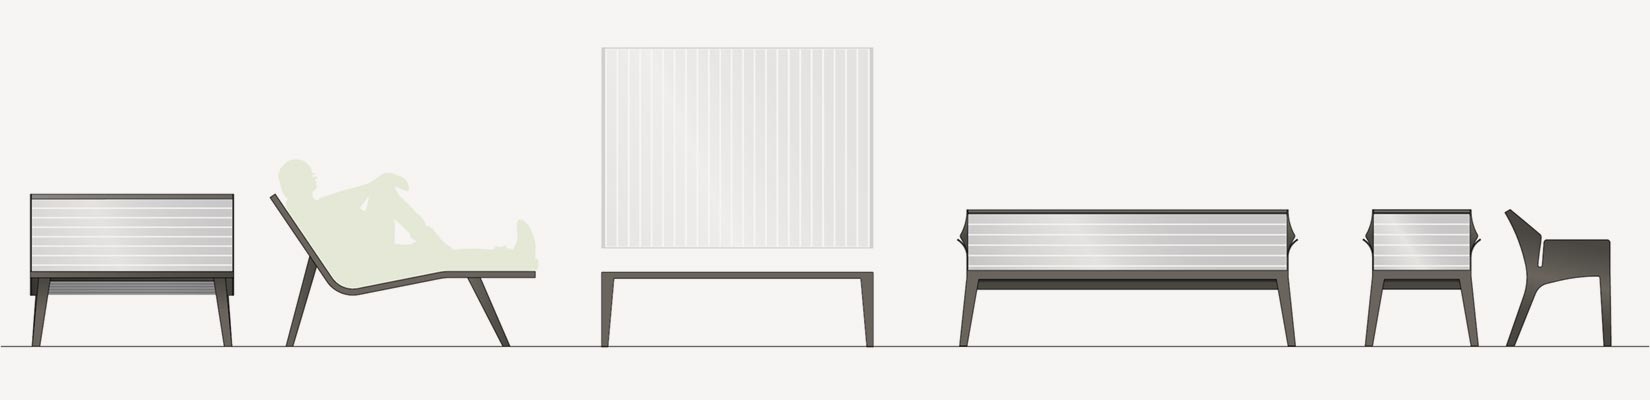 Mobiliers coordonnés a la Grande chaise longue Michigan aluminium conçu et fabriqué par Aréa mobilier urbain